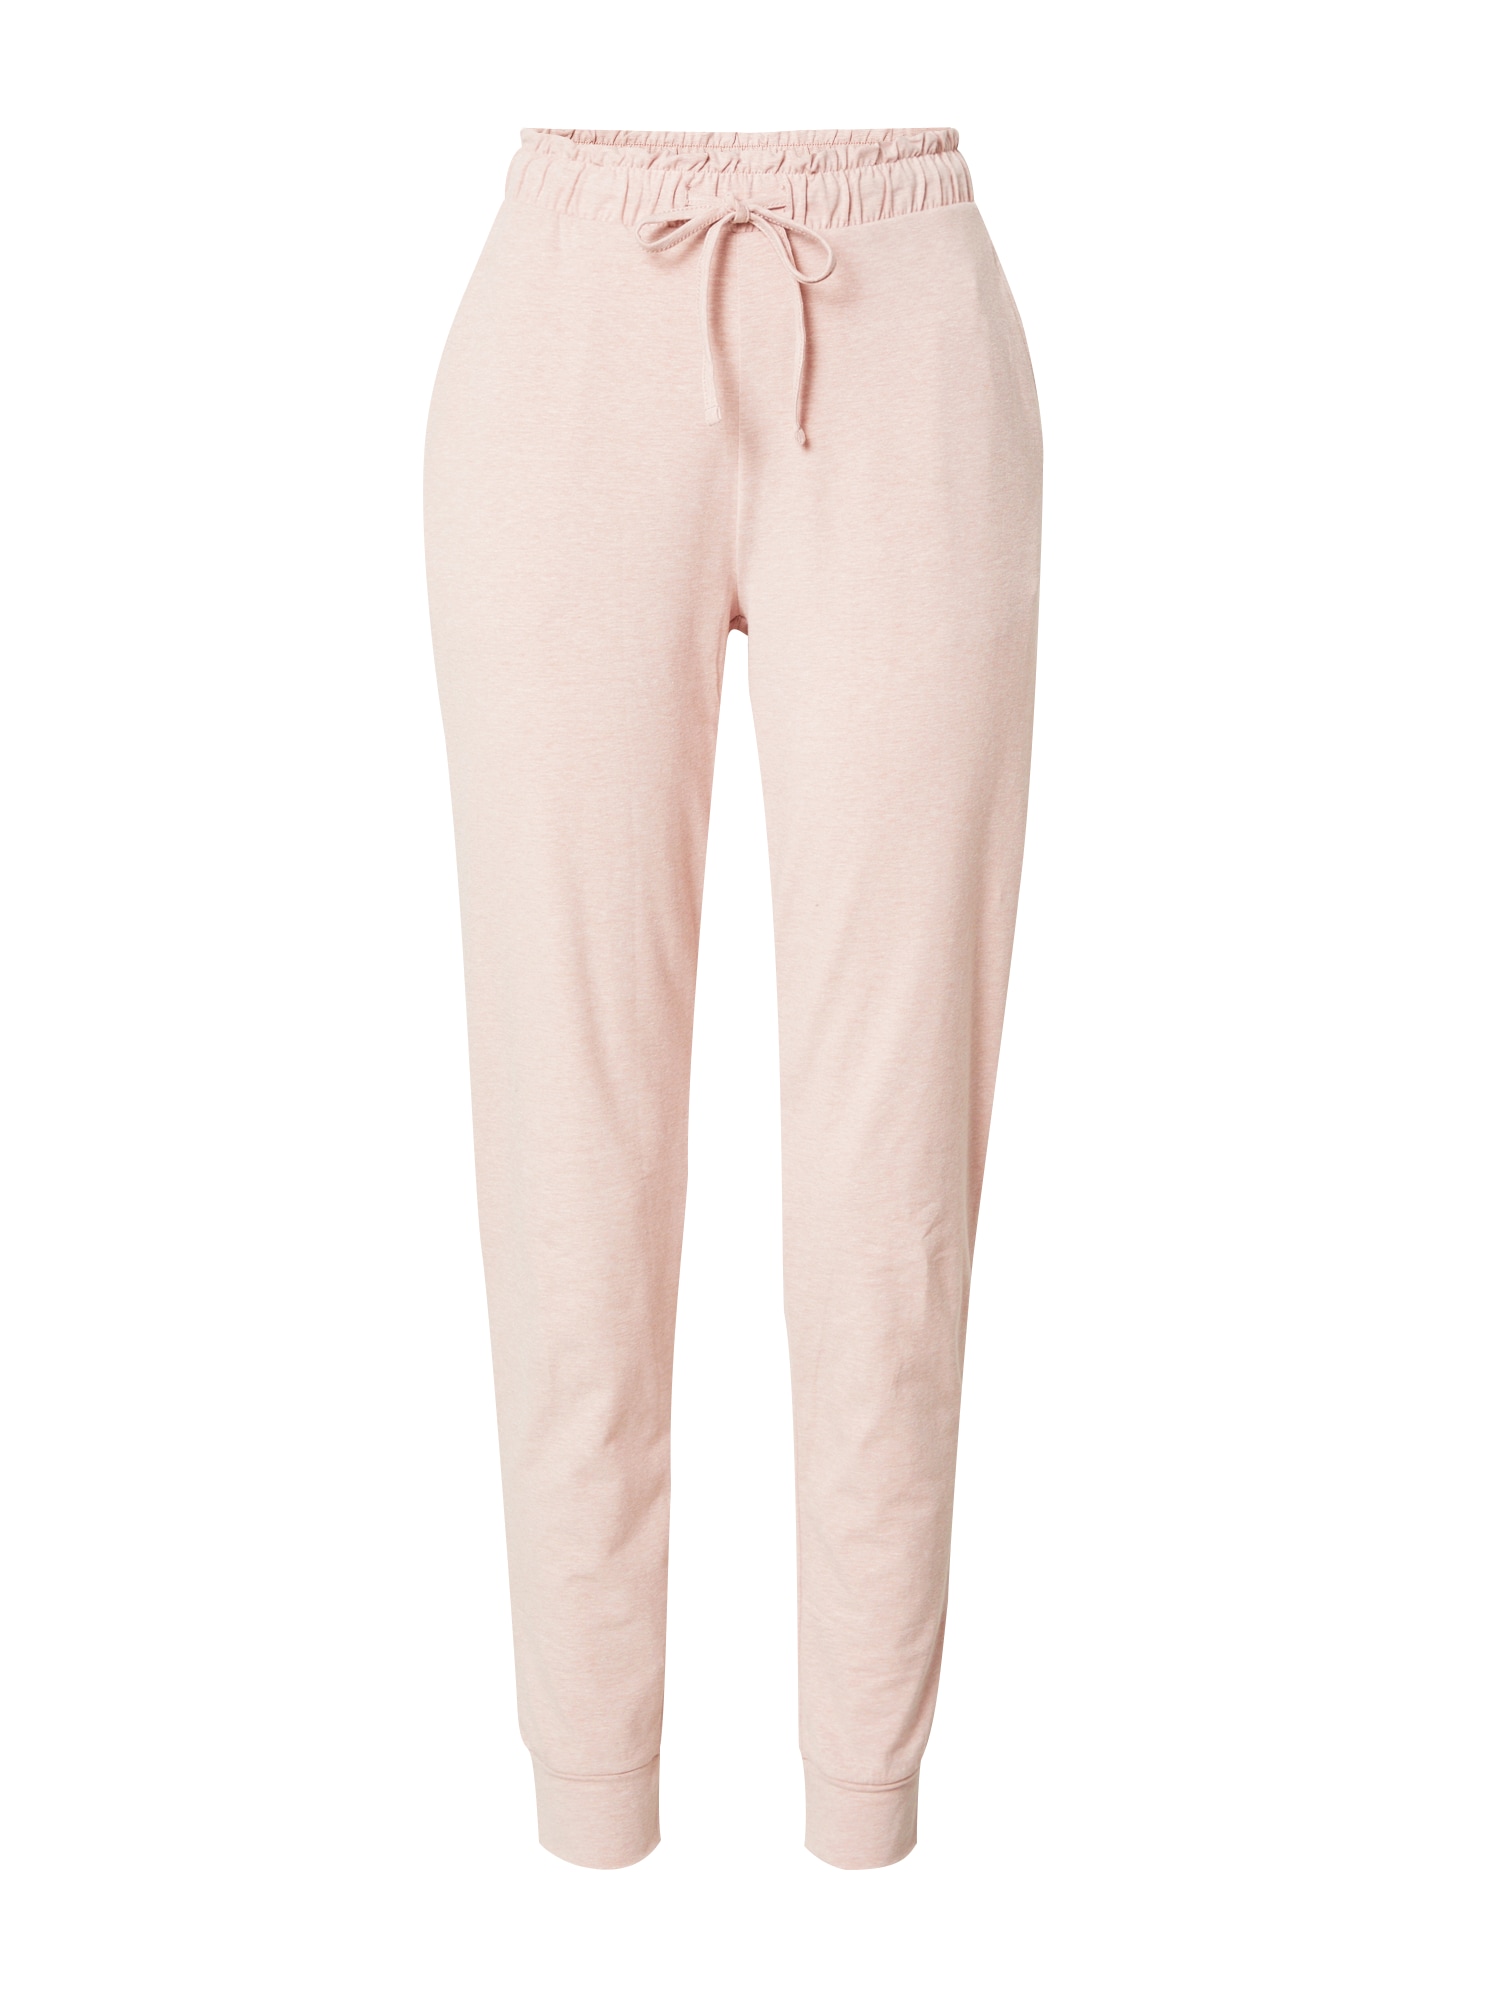 ESPRIT Панталон пижама  пастелно розово